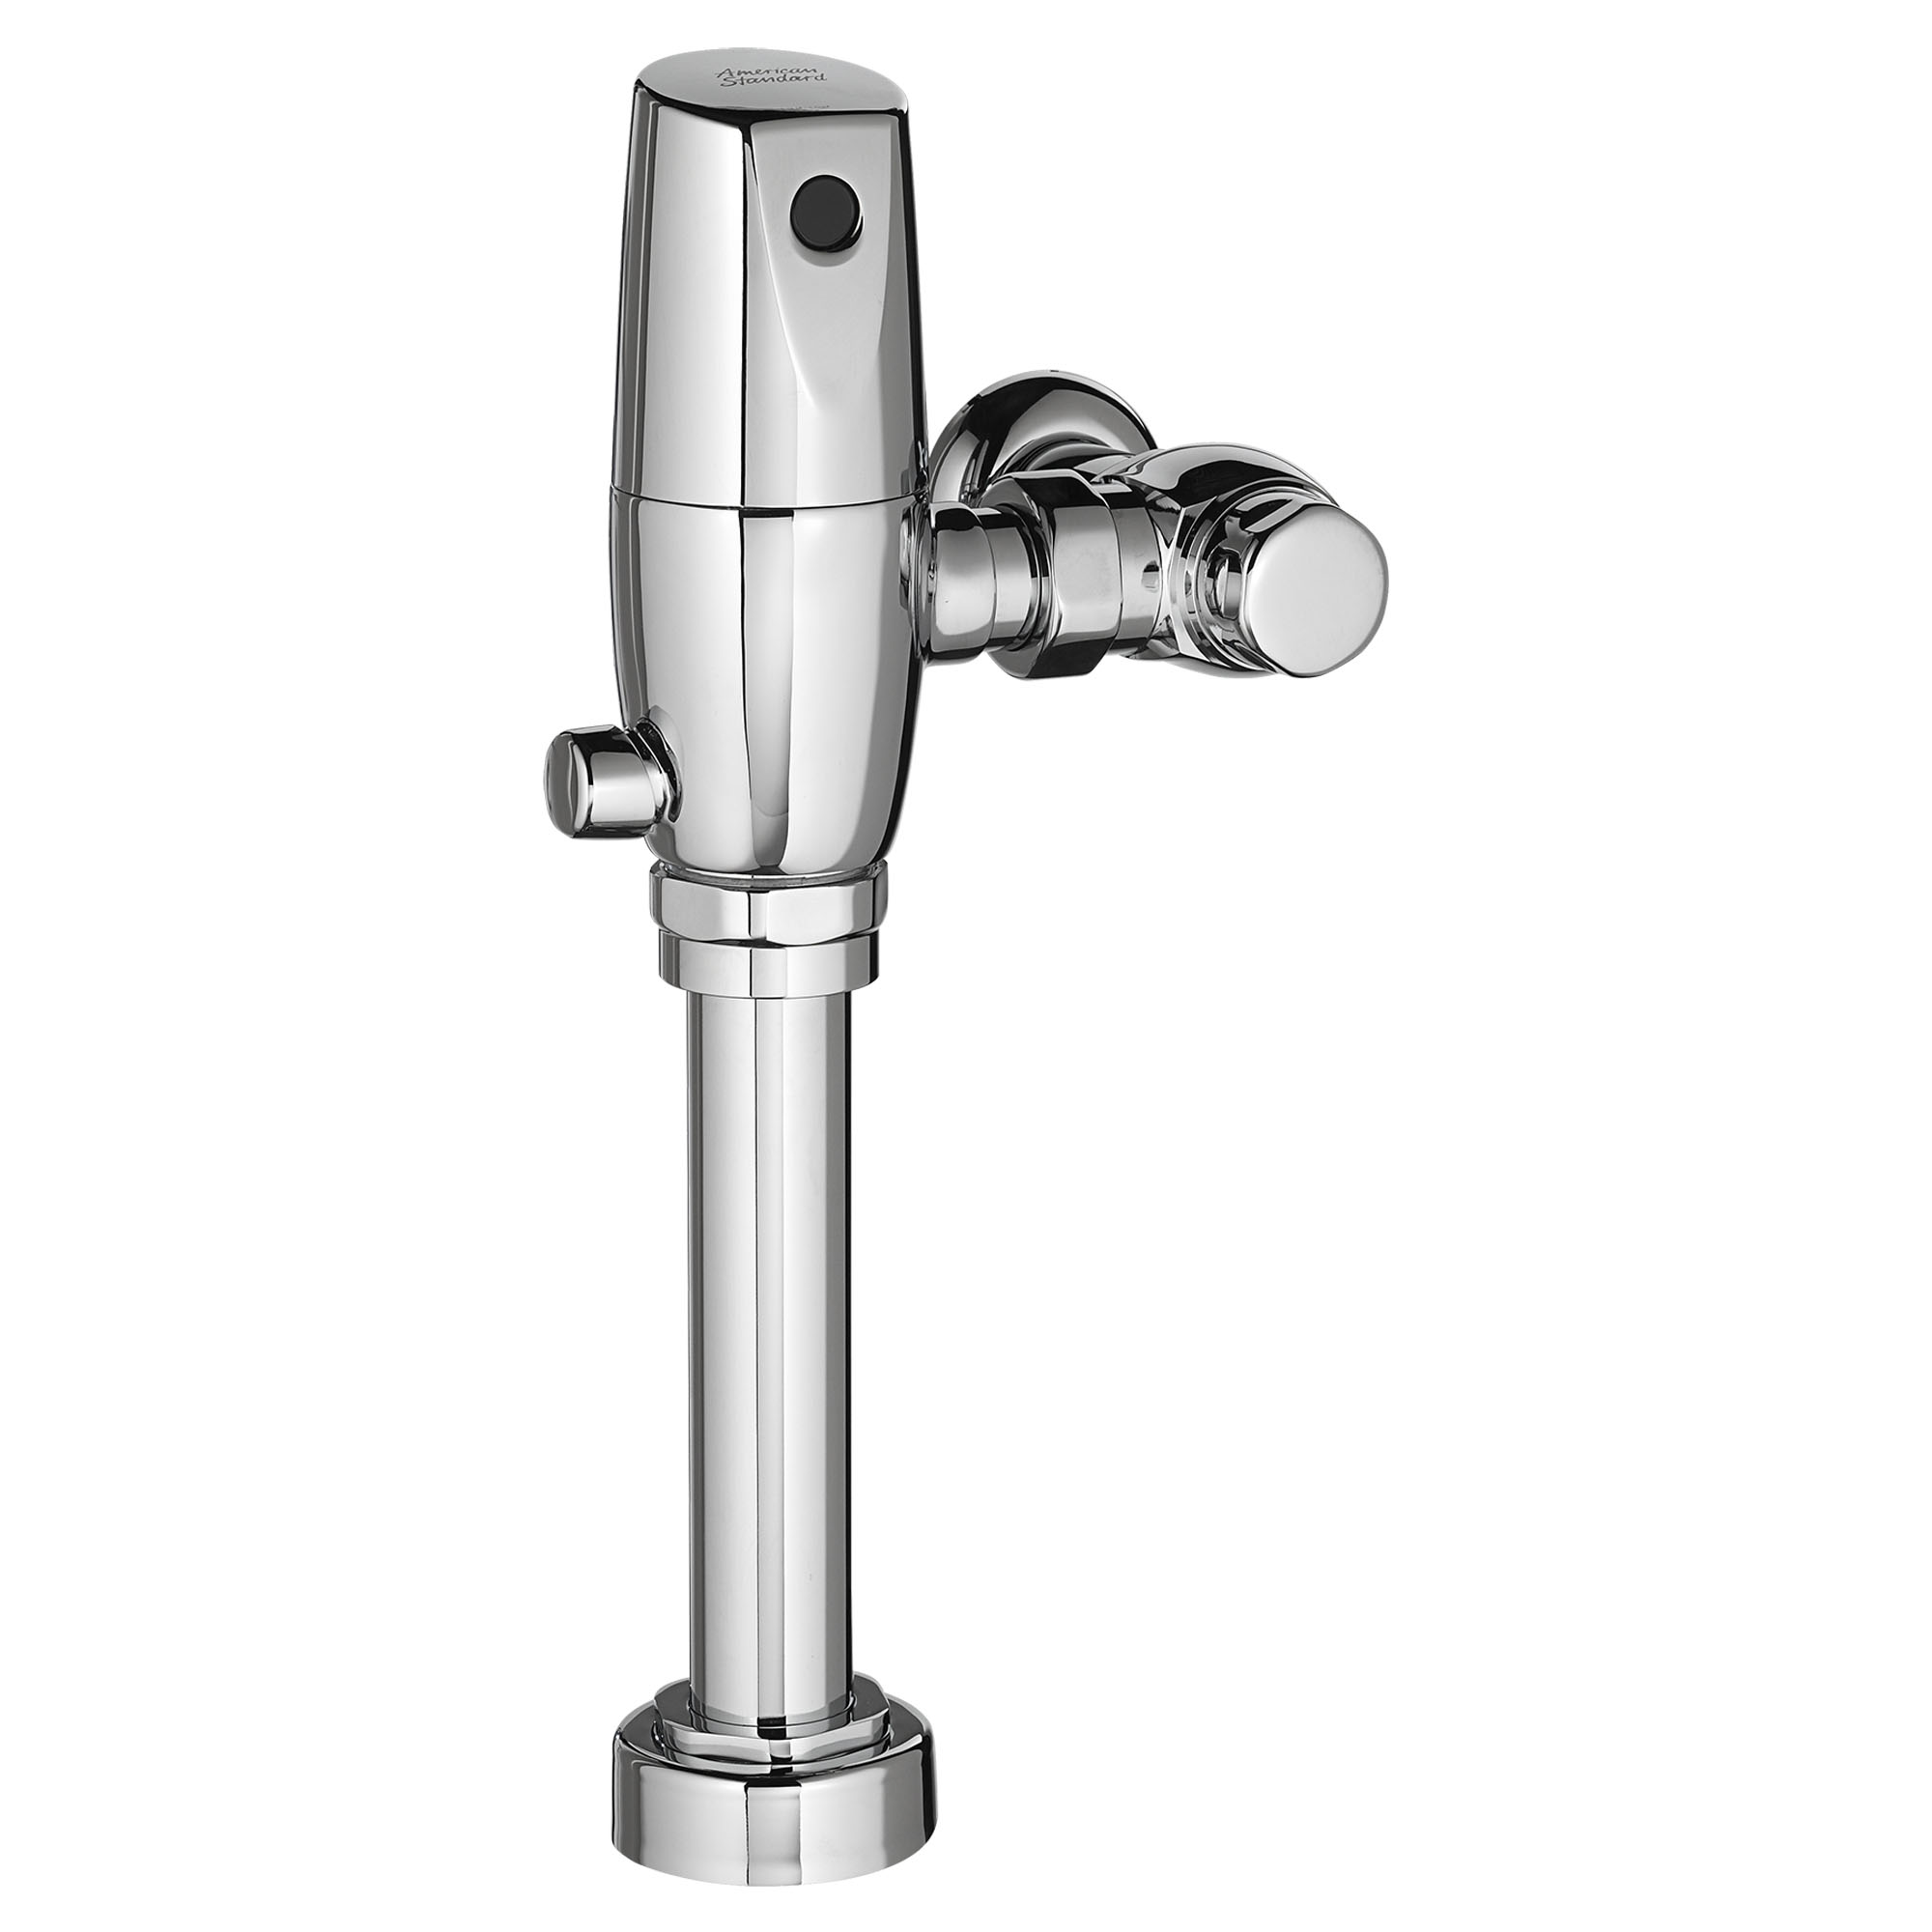 UltimaMC SelectronicMC - Robinets de chasse d’eau double exposés à piston pour toilette, alimentation à pile, 1,6/ 1,1 gpc (6,0/4,2 lpc)